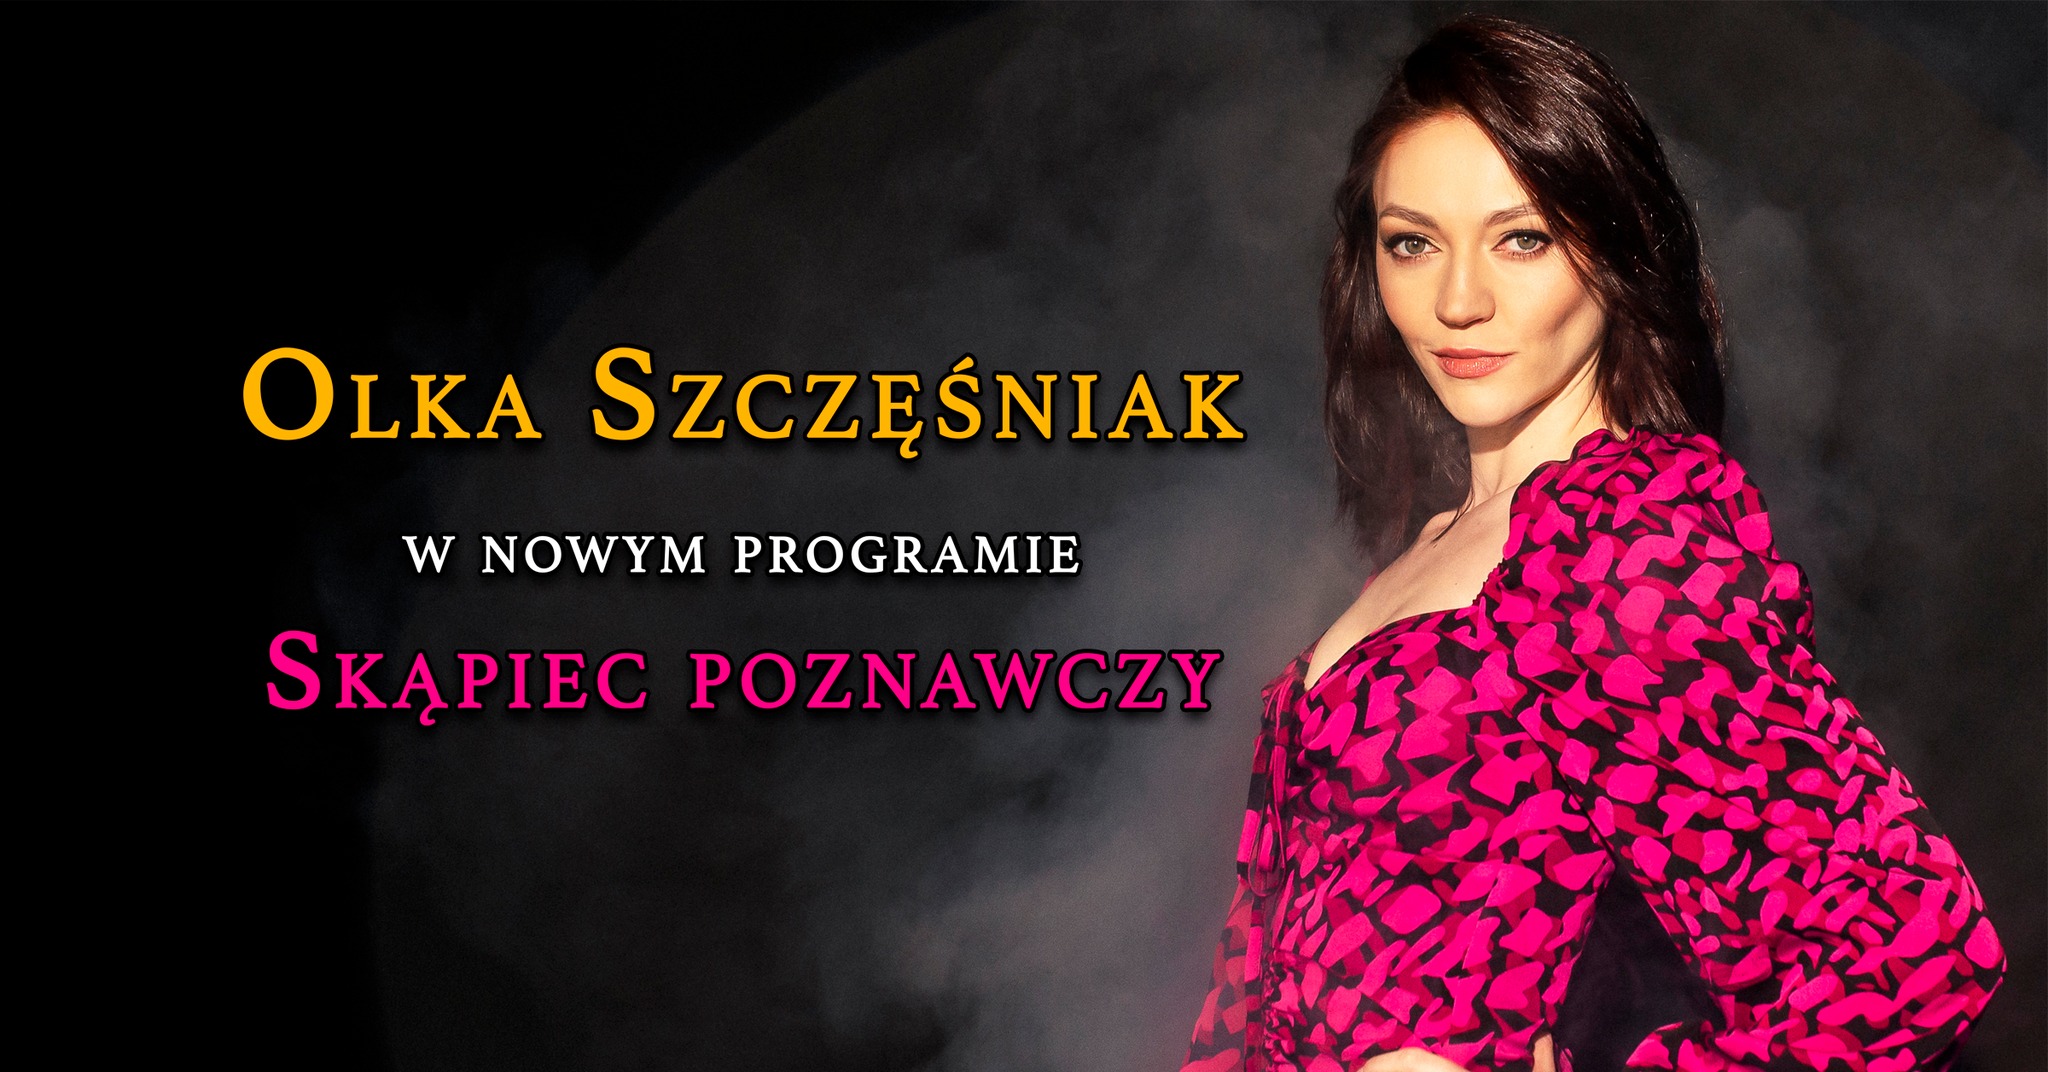 Extra show! Polish Comedy Club presents: Olka Szczesniak